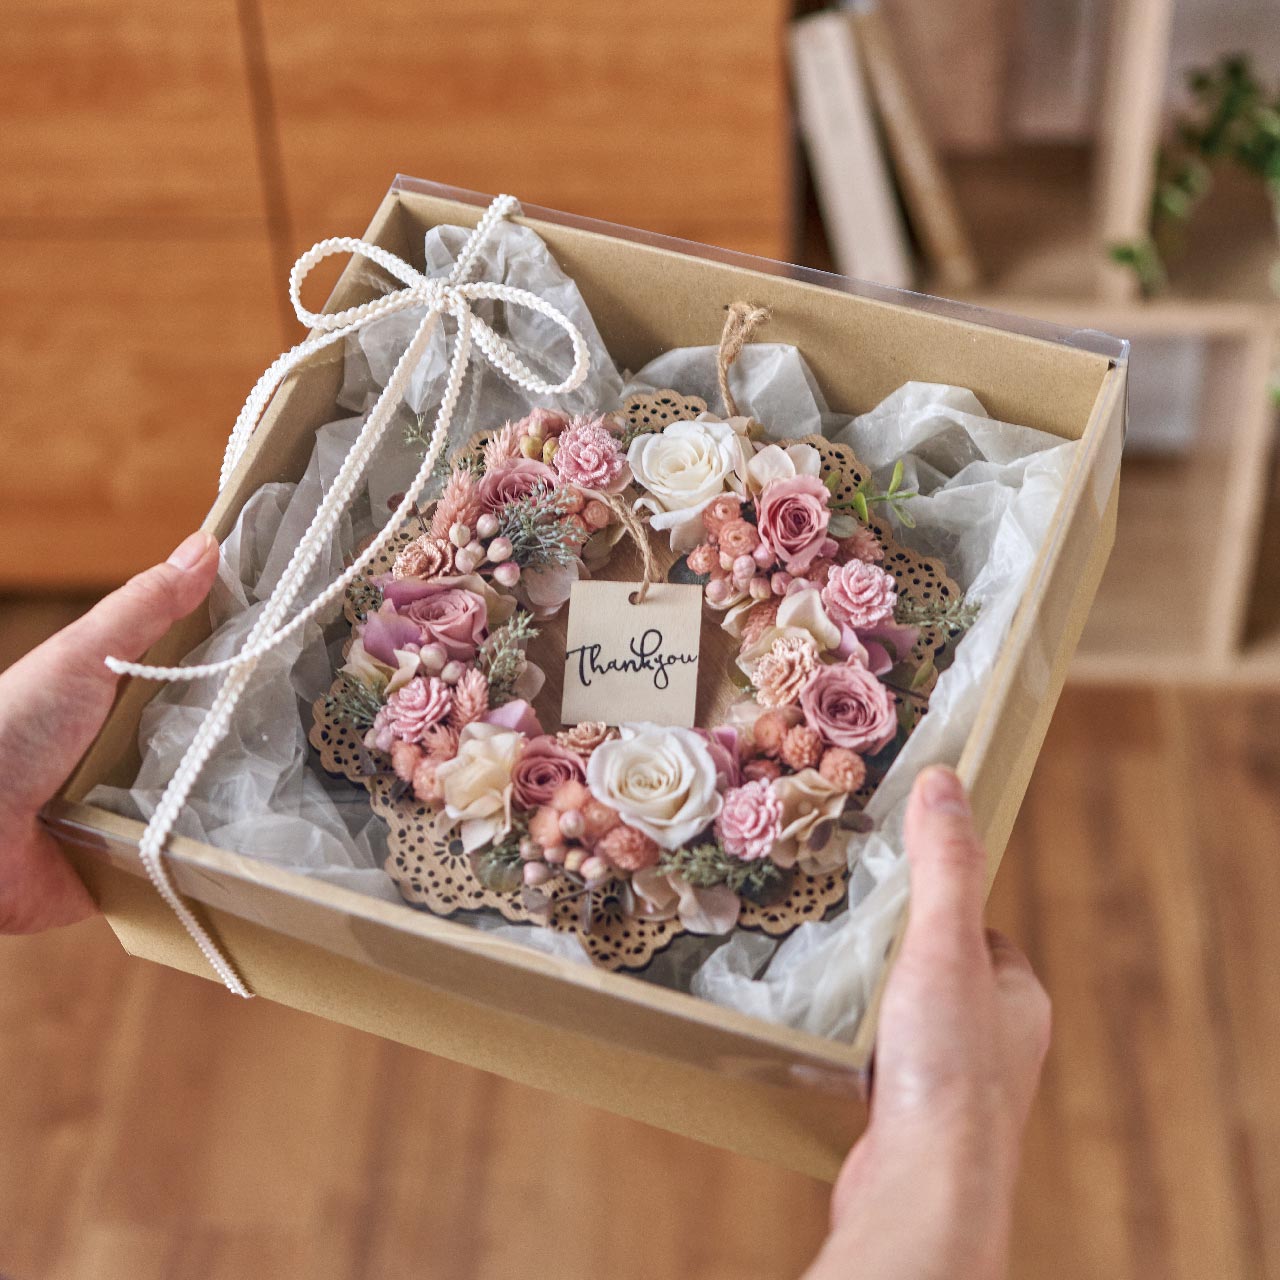 マイフラ】 通販/リースボックス25 包装資材 パッケージ GF000370 5枚入 アレンジBOX(幅 約25cm): リボン ラッピング  包装資材/全国にMAGIQ、花器、花資材などをお届けします。